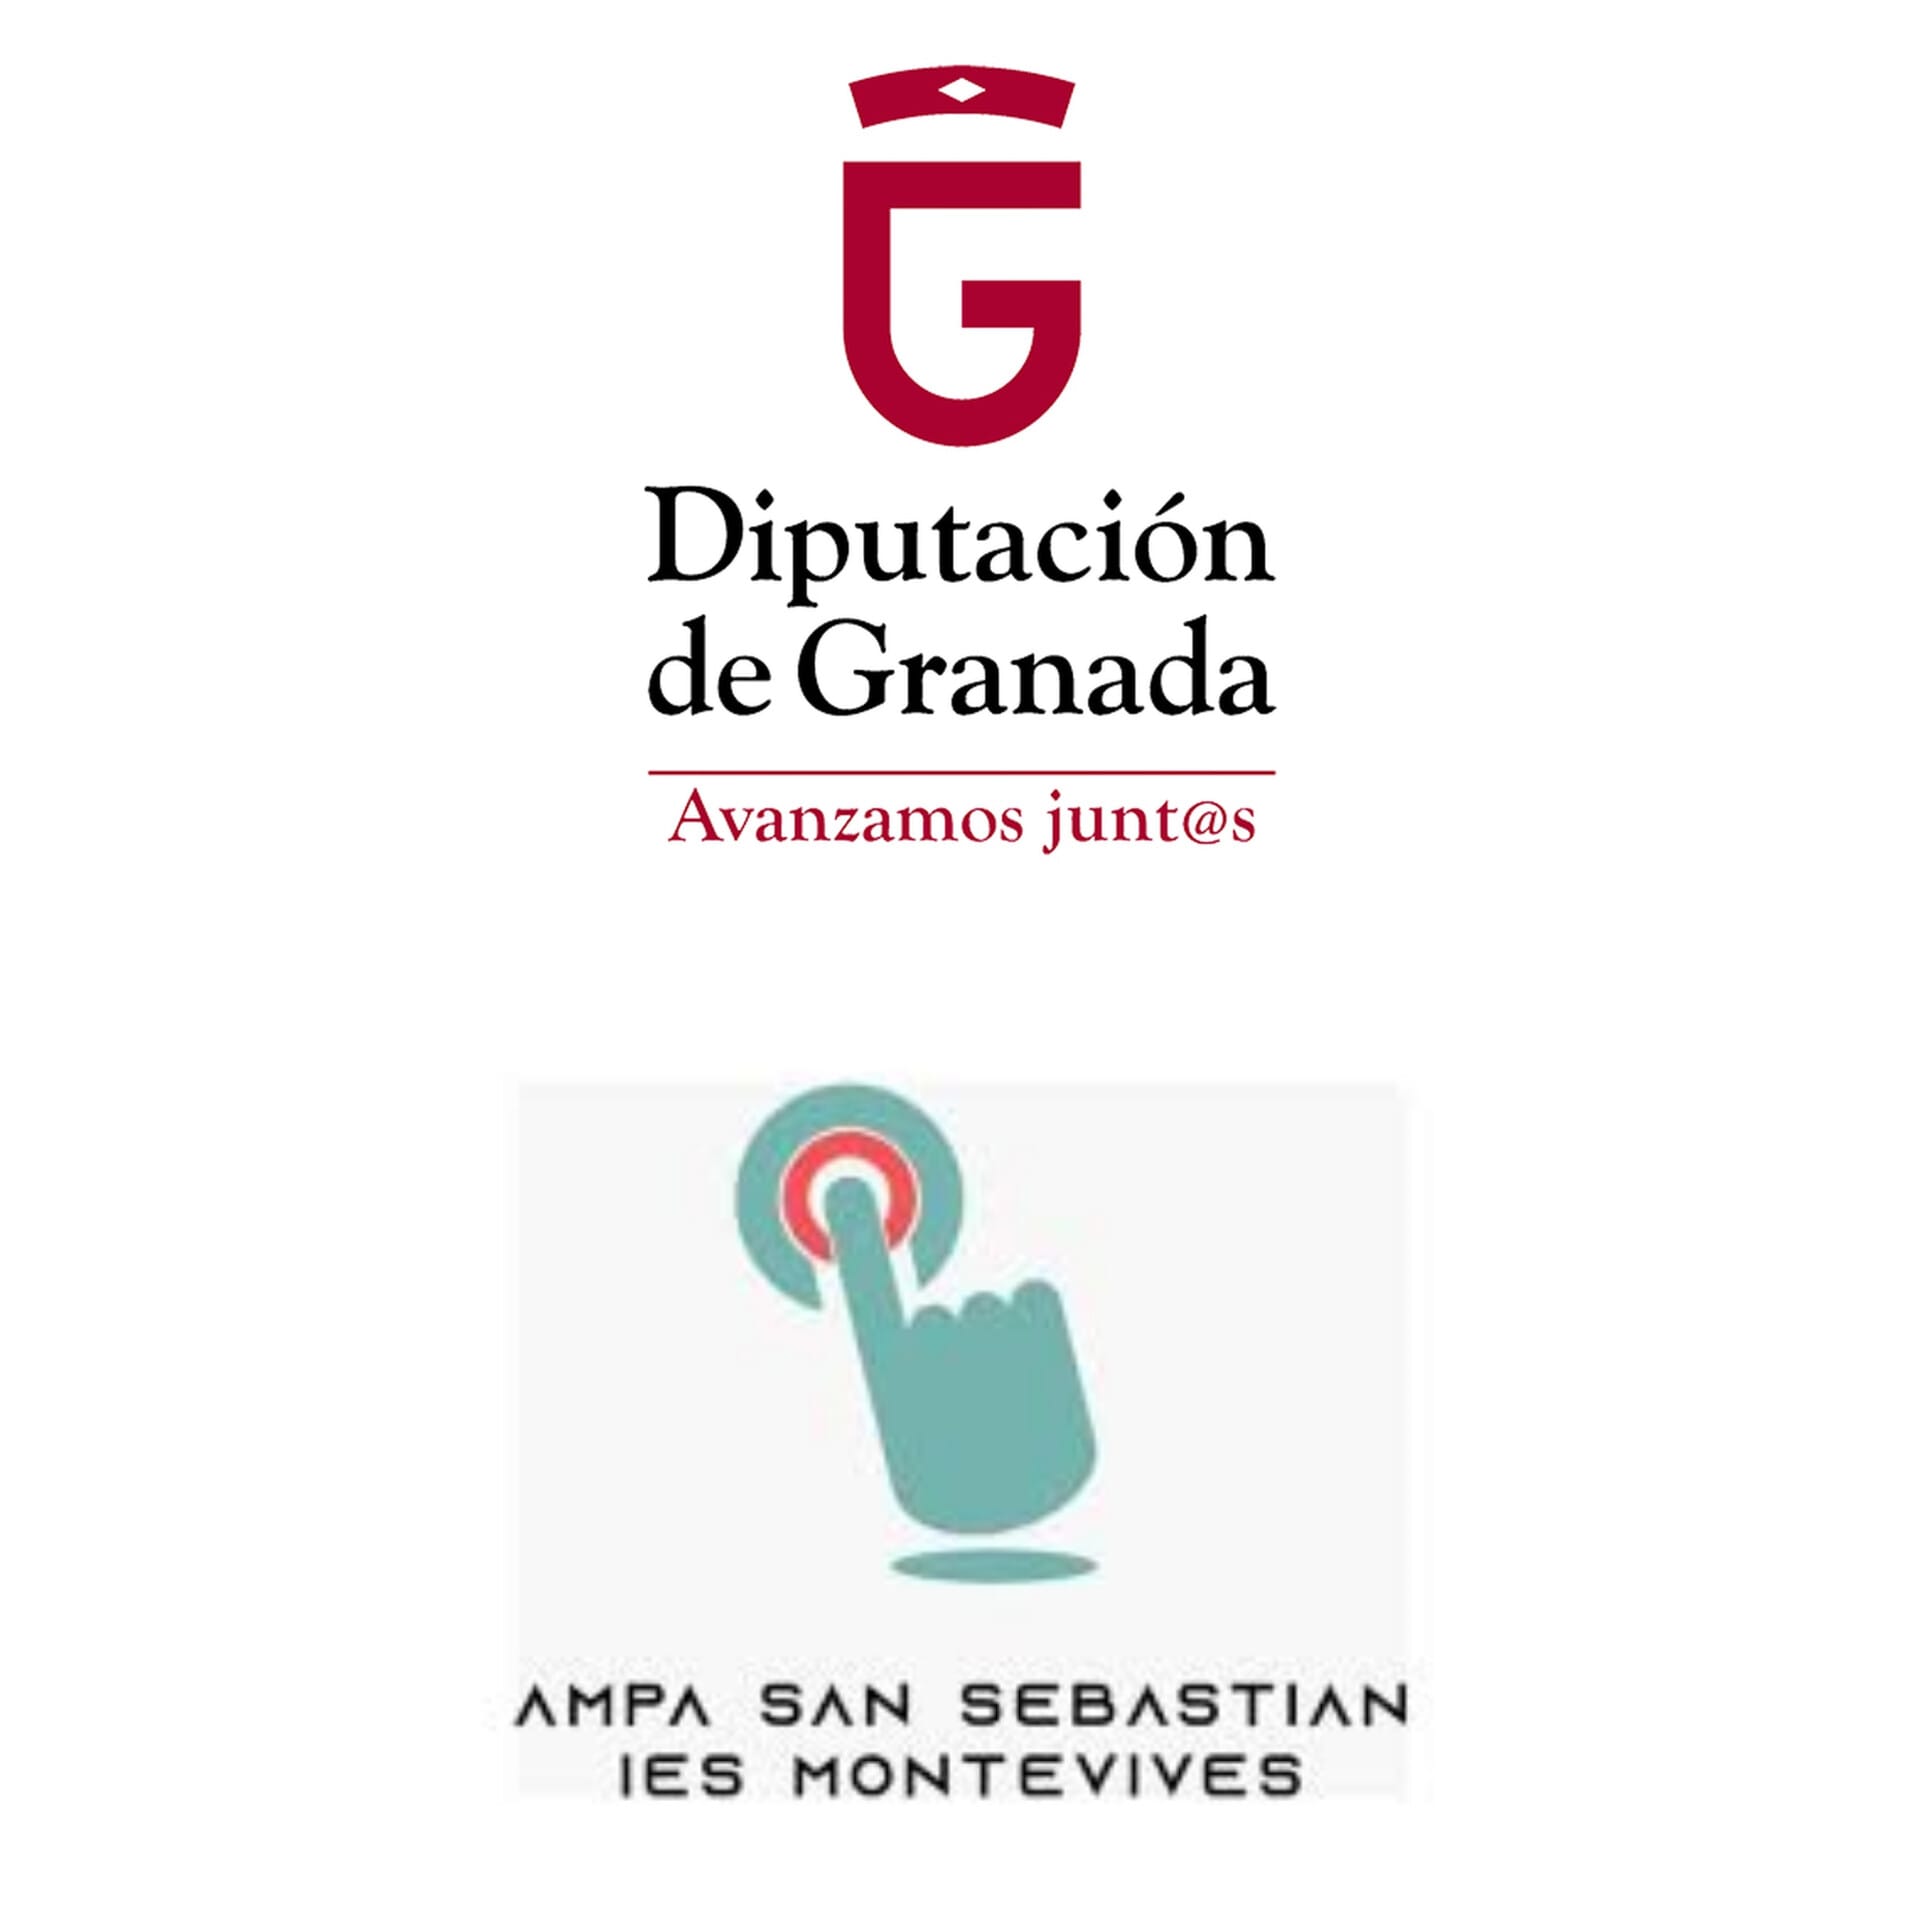 Diputación de Granada y Ampa San Sebastián